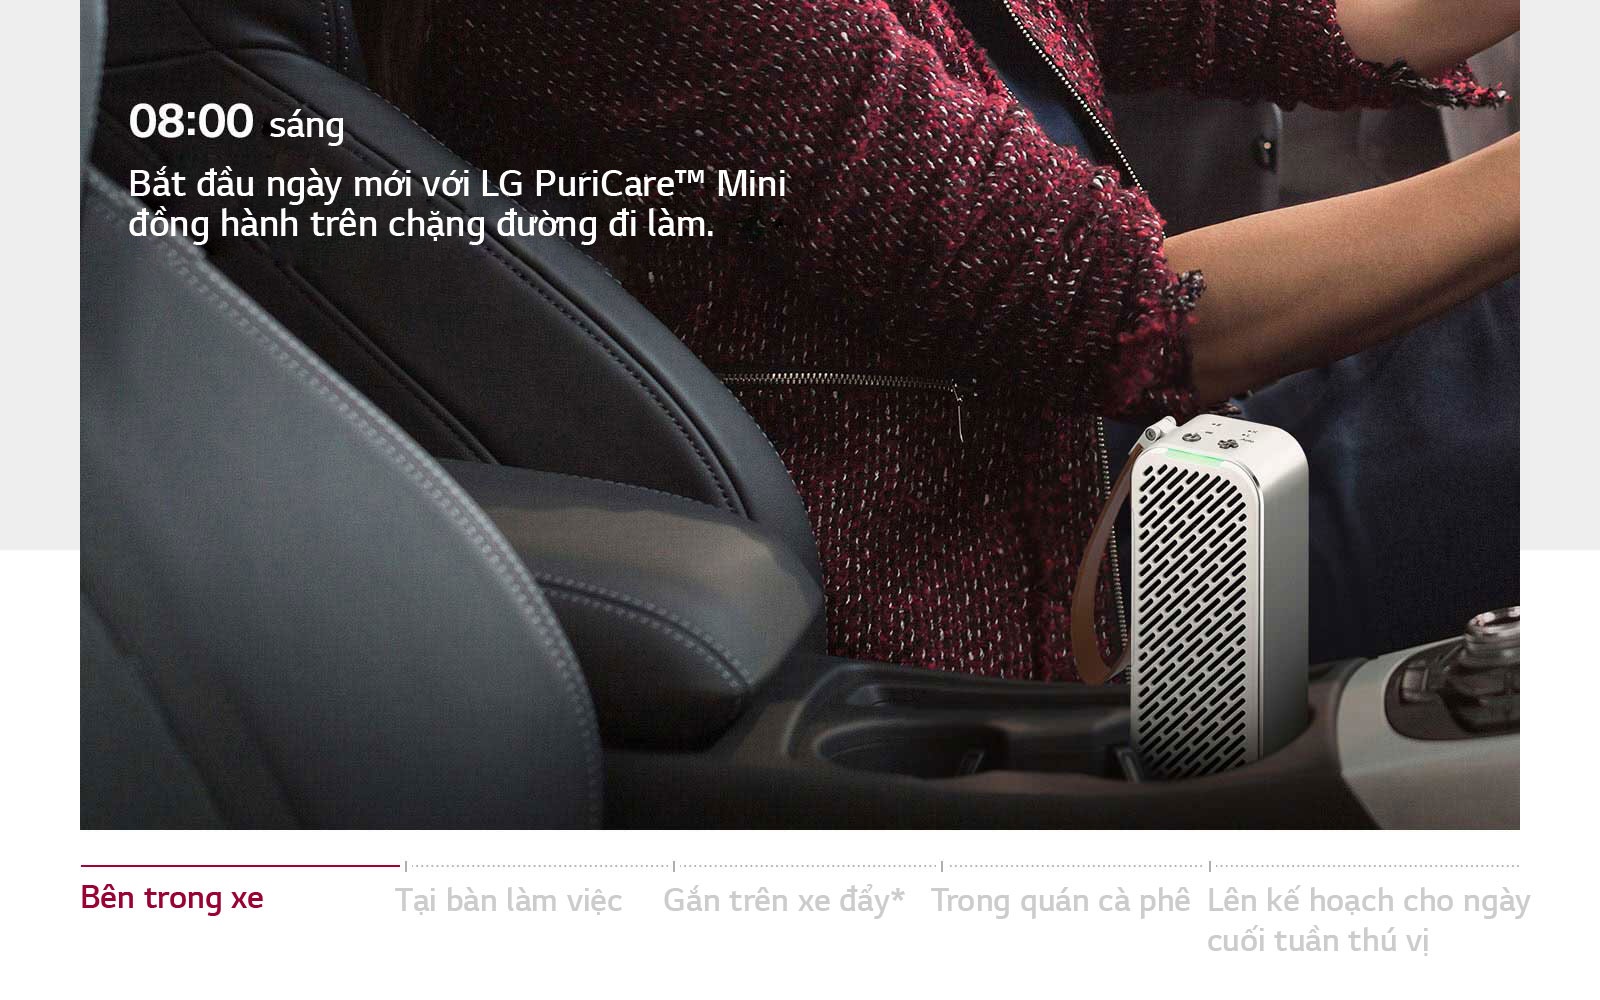 máy lọc không khí LG PuriCare mini, Máy lọc không khí, LG PuriCare, LG,